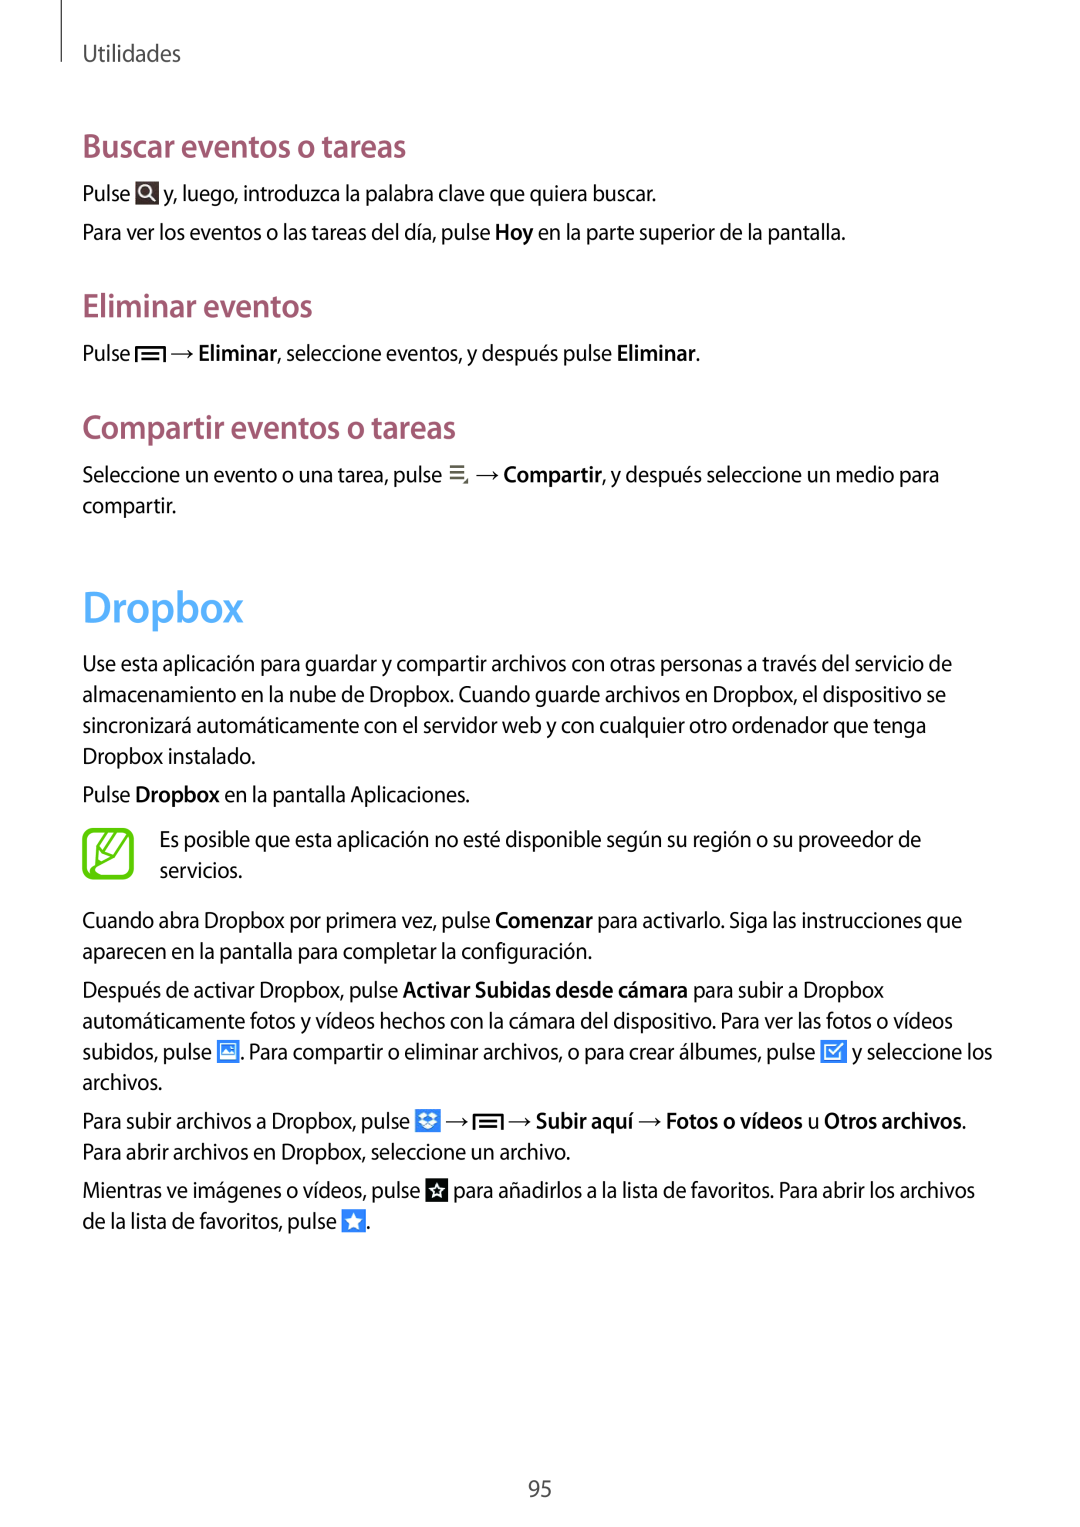 Samsung SM-T3150ZWAATL manual Dropbox, Buscar eventos o tareas, Eliminar eventos, Compartir eventos o tareas, Utilidades 